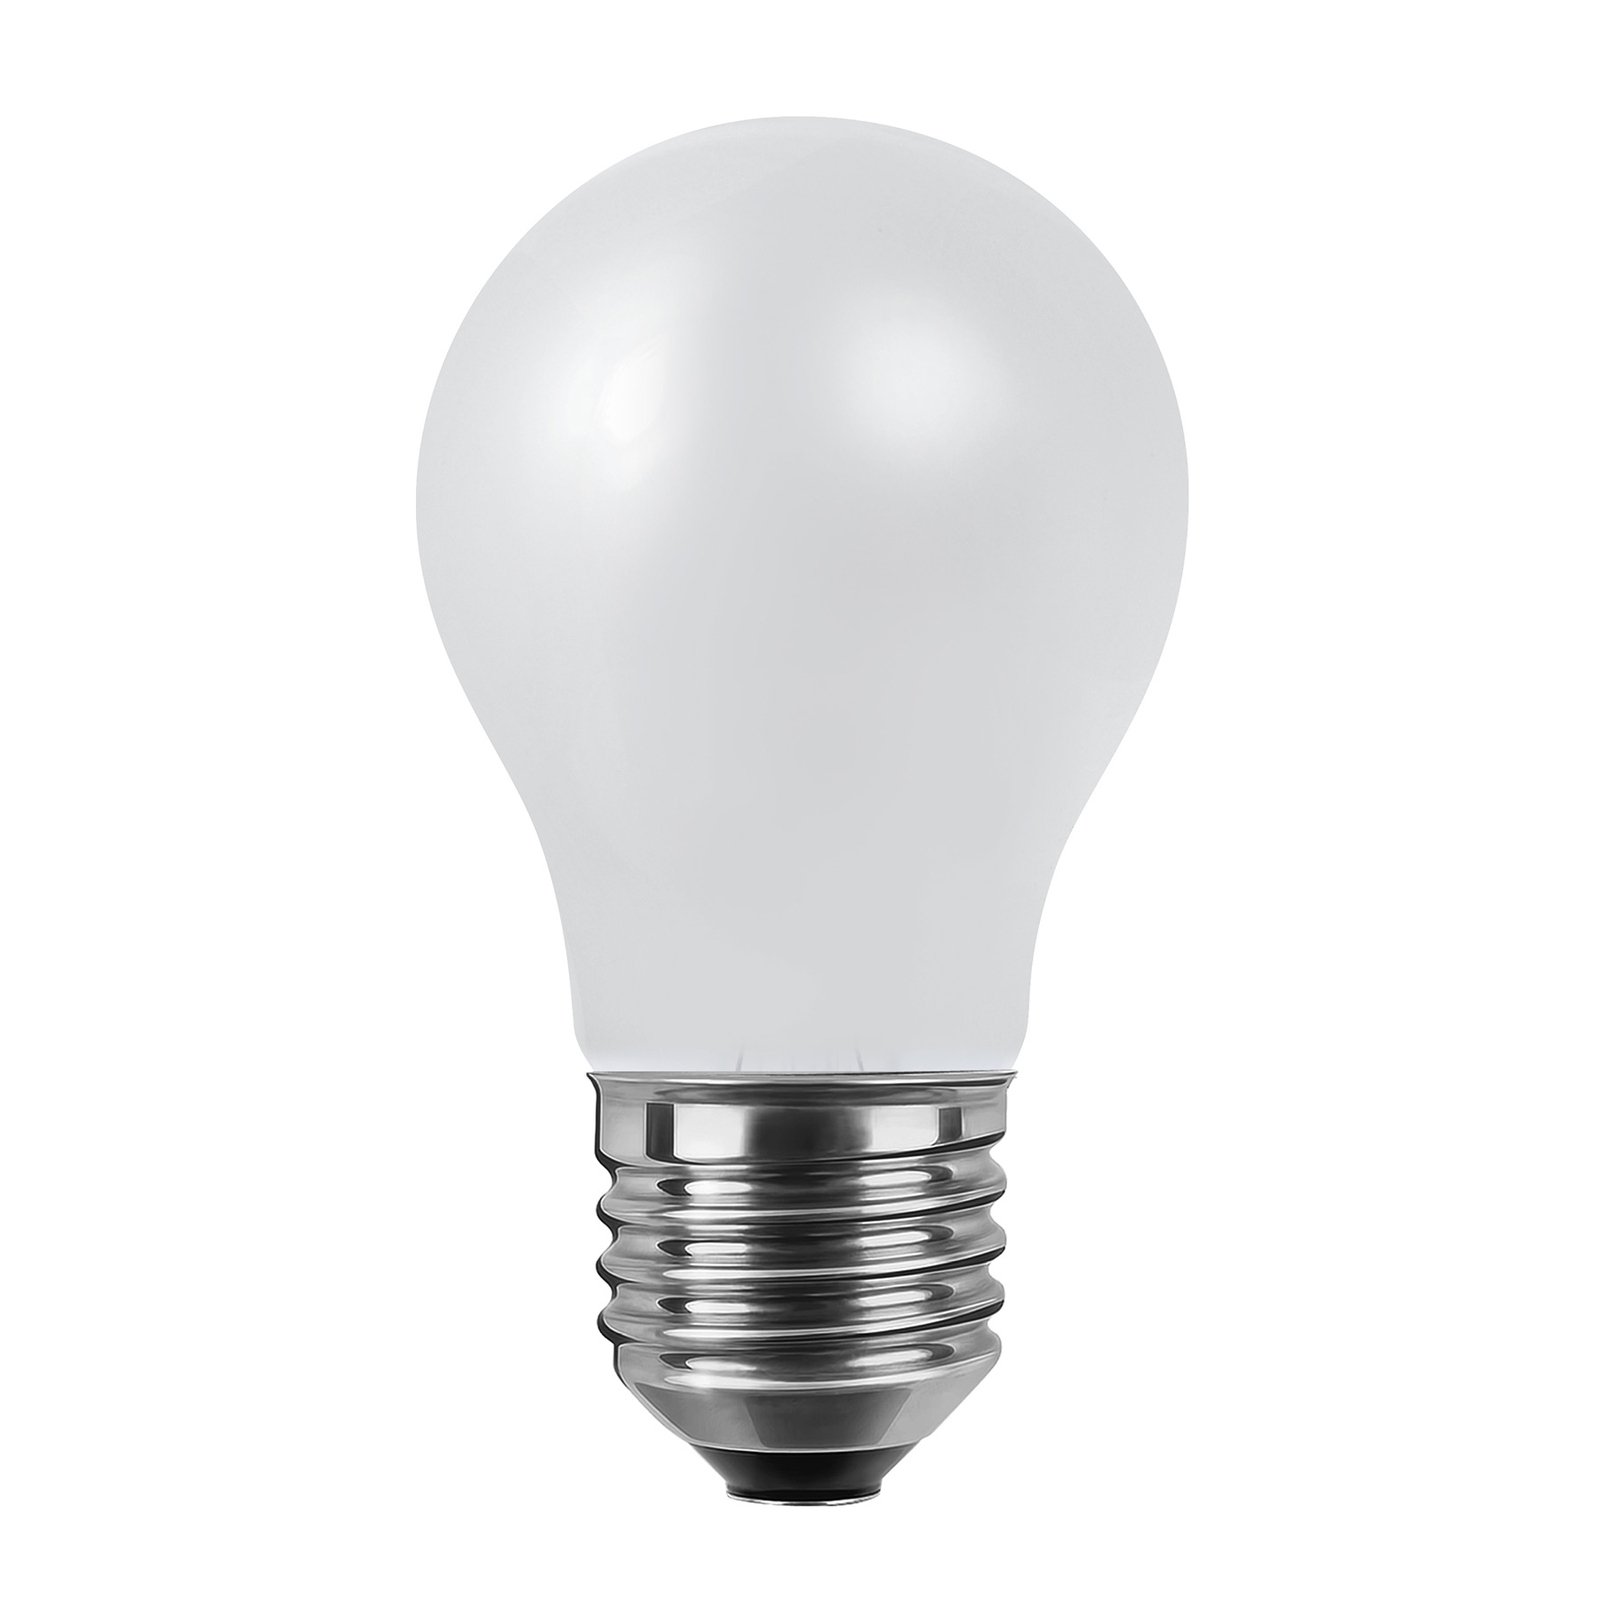 SEGULA LED lamp 24V E27 6W 927 ambient dim mat